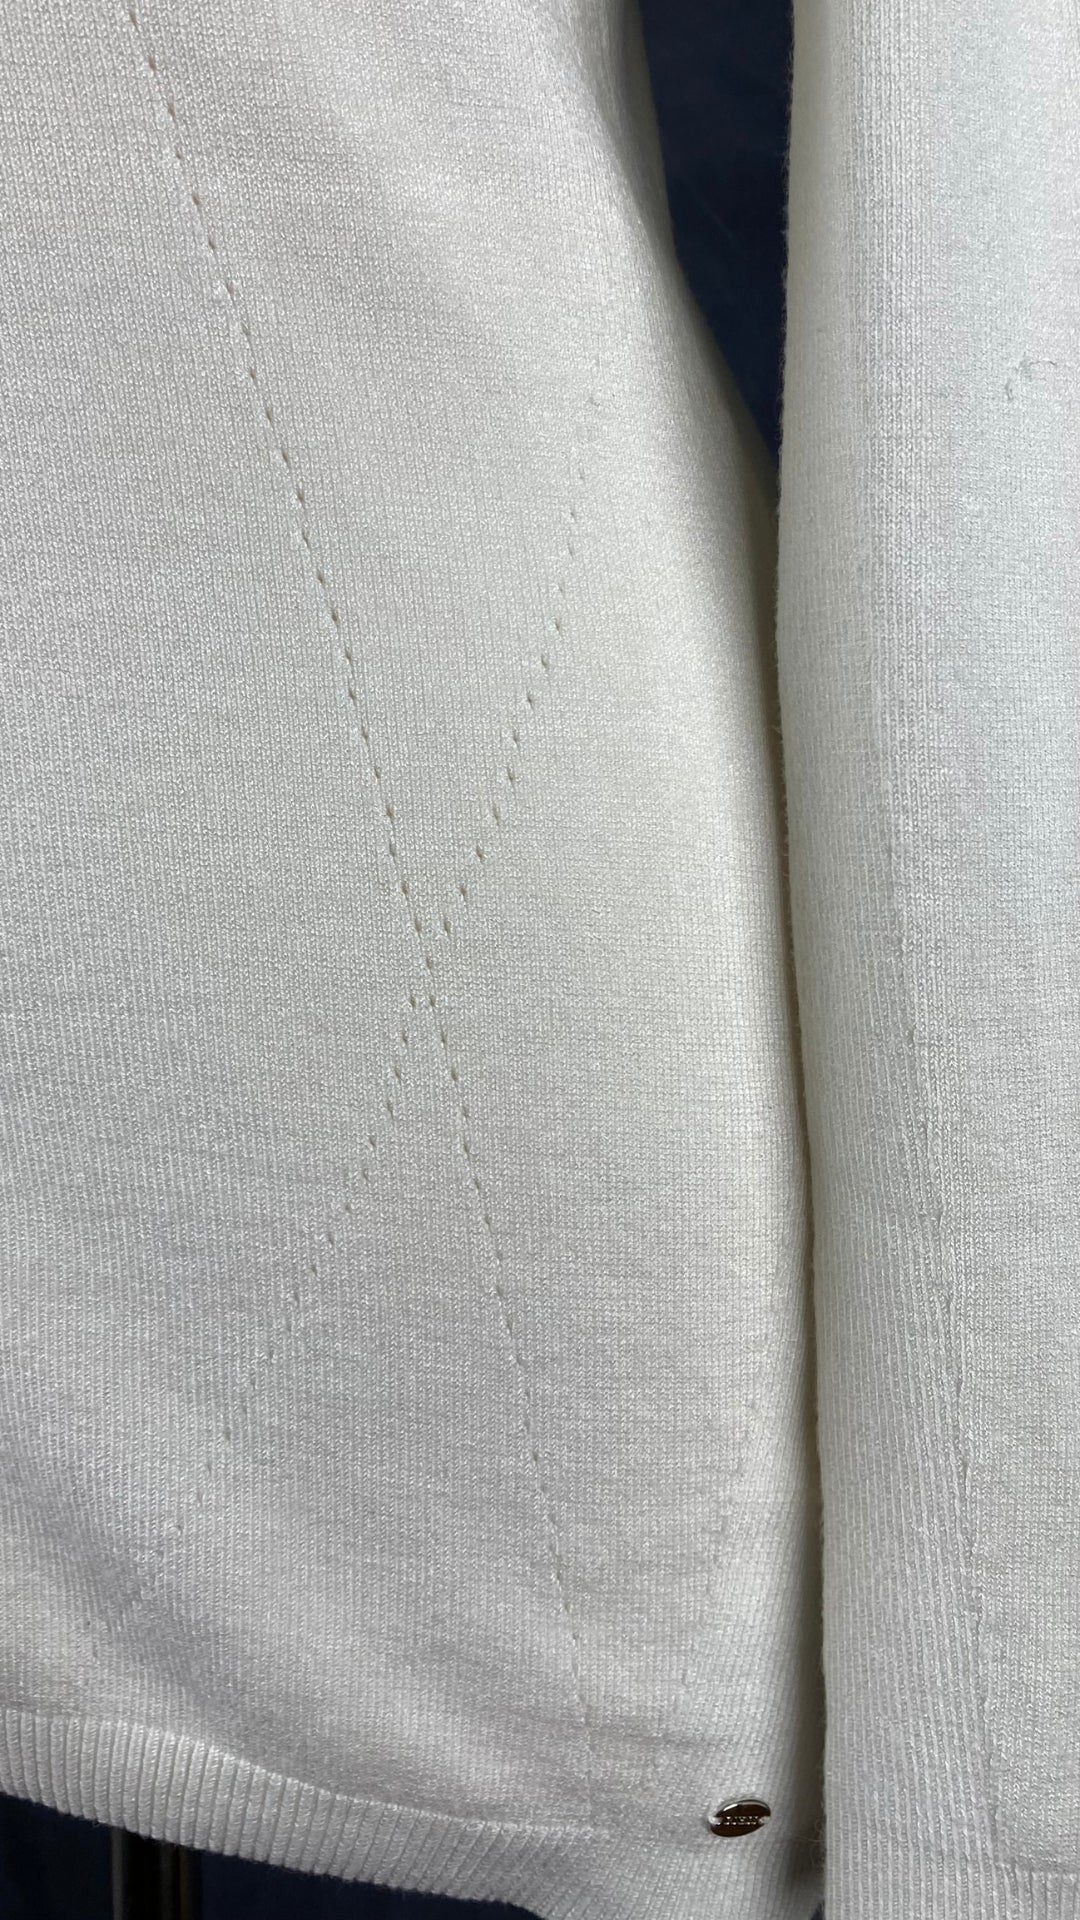 Chandail crème en tricot Guess à une manche. Vue de près des détails du tissu.